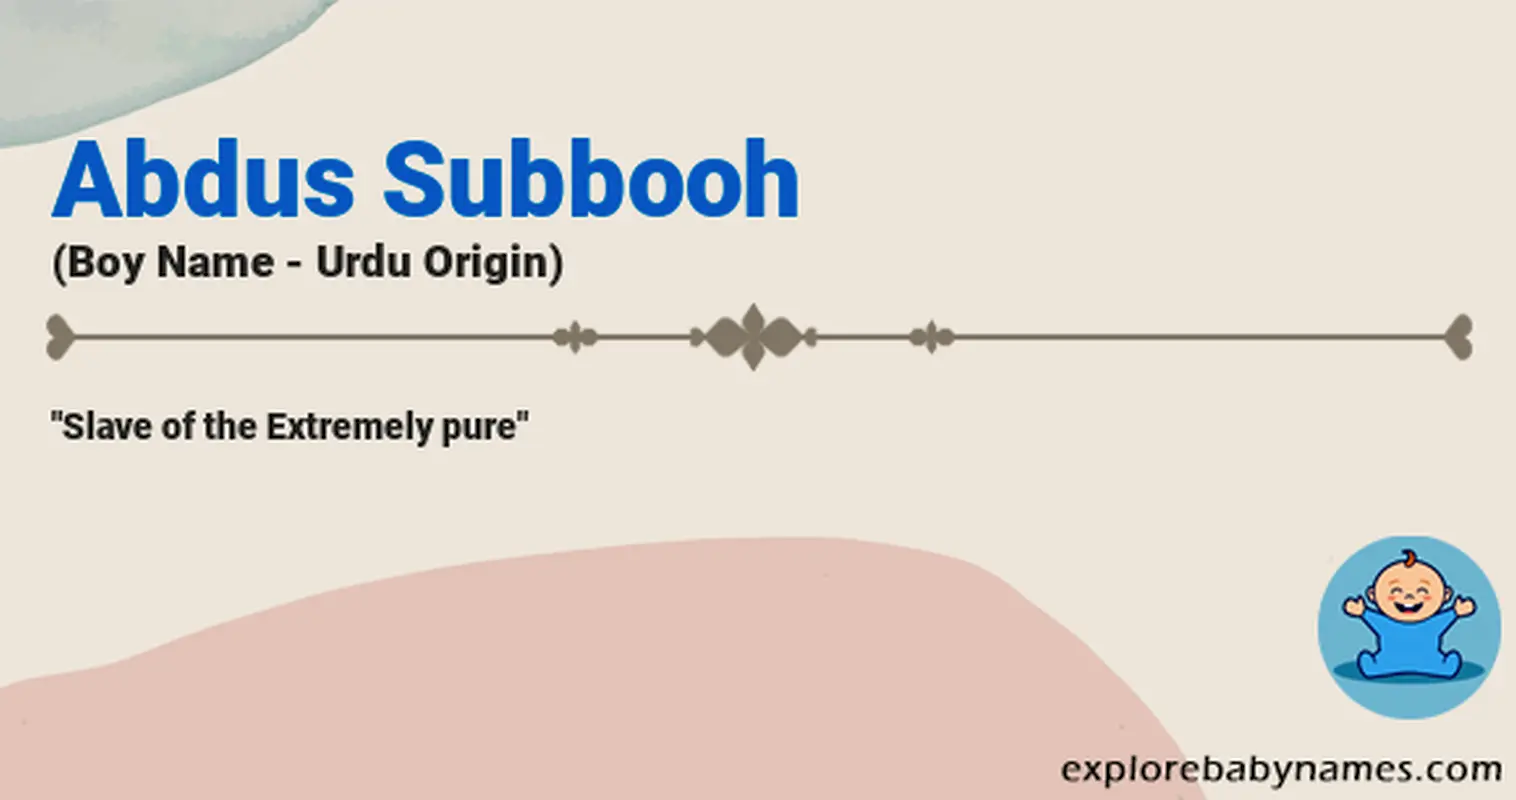 Meaning of Abdus Subbooh